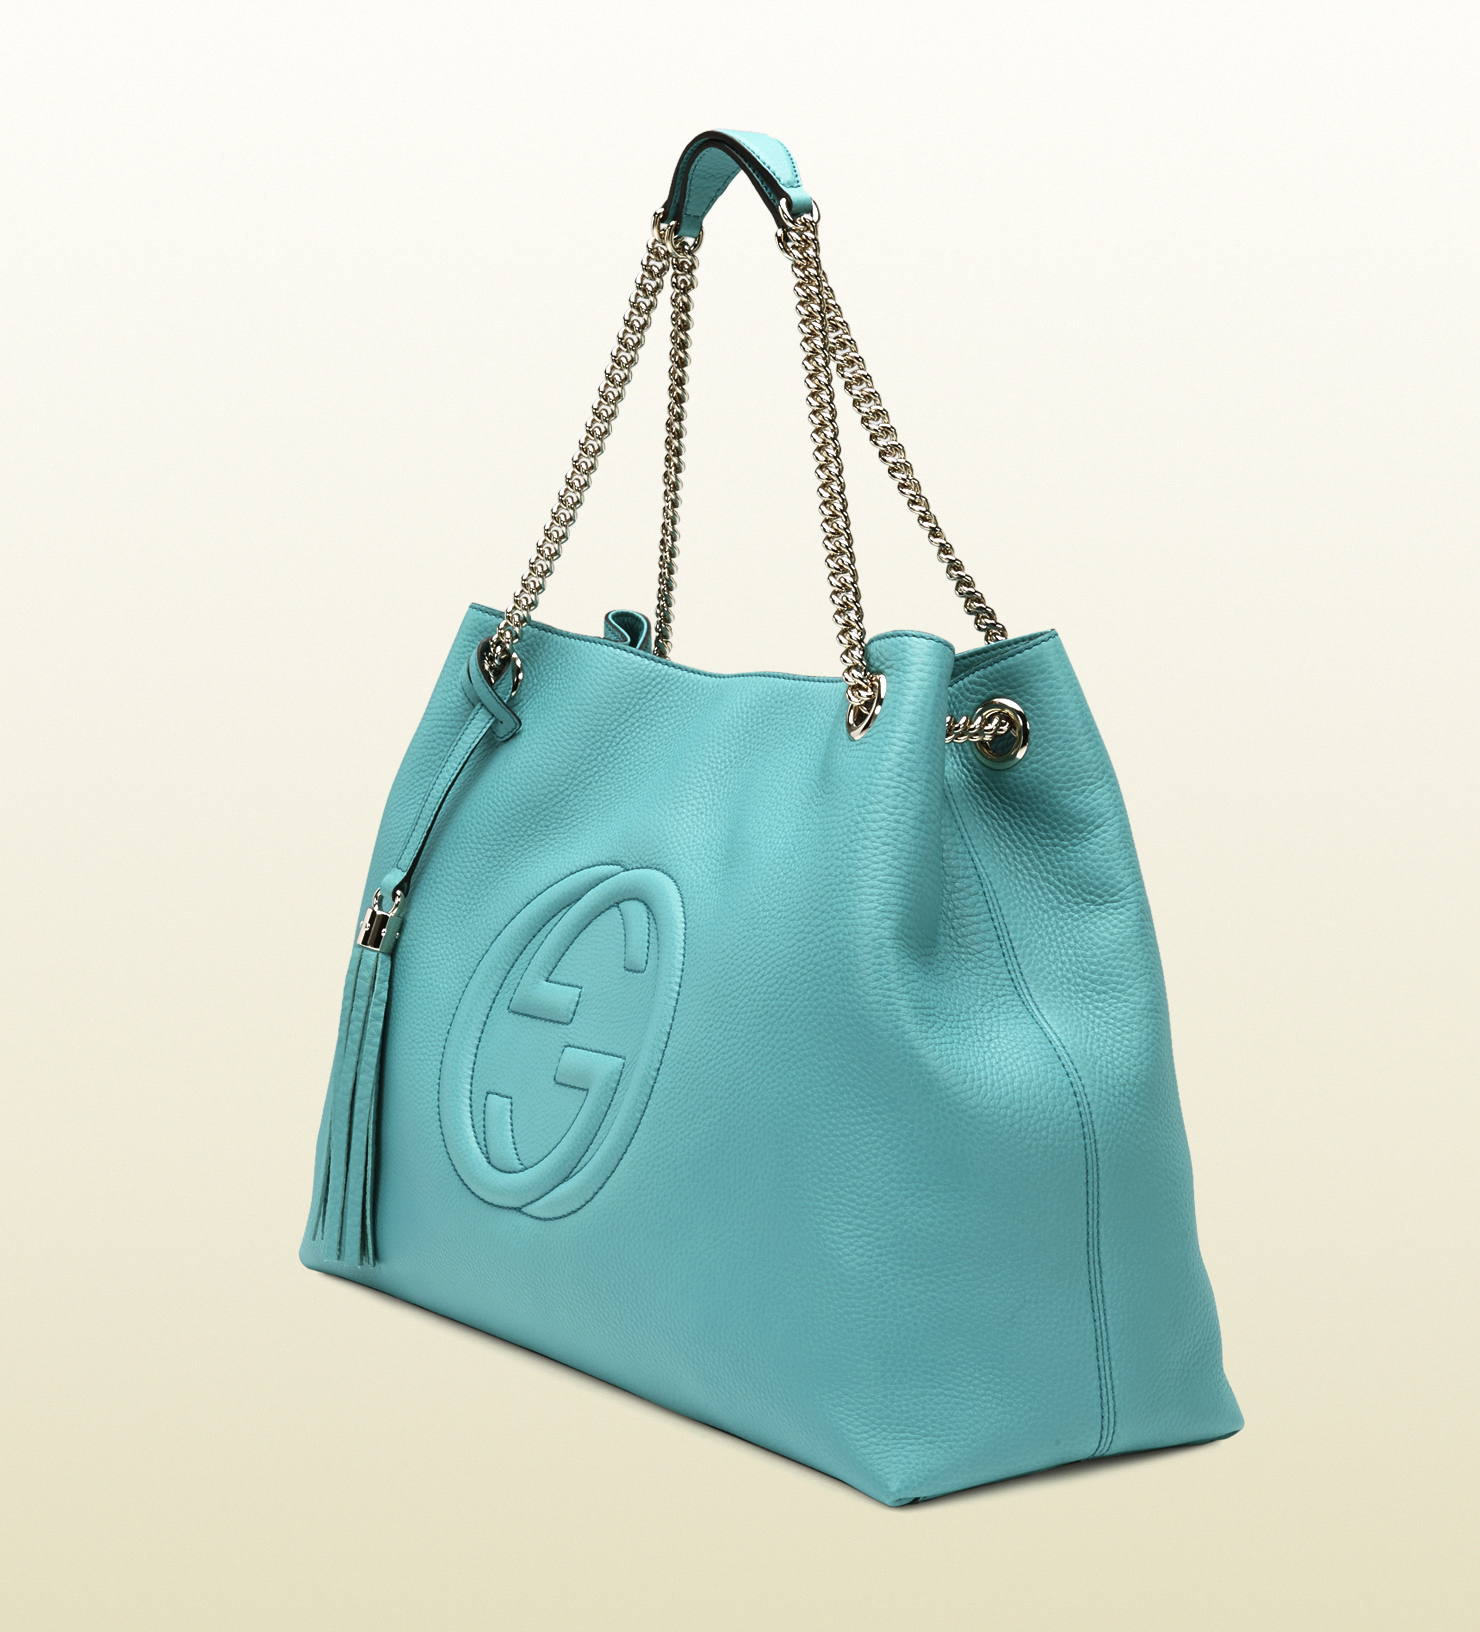 Gucci Soho Light Blue Leather Shoulder Bag in Blue | Lyst